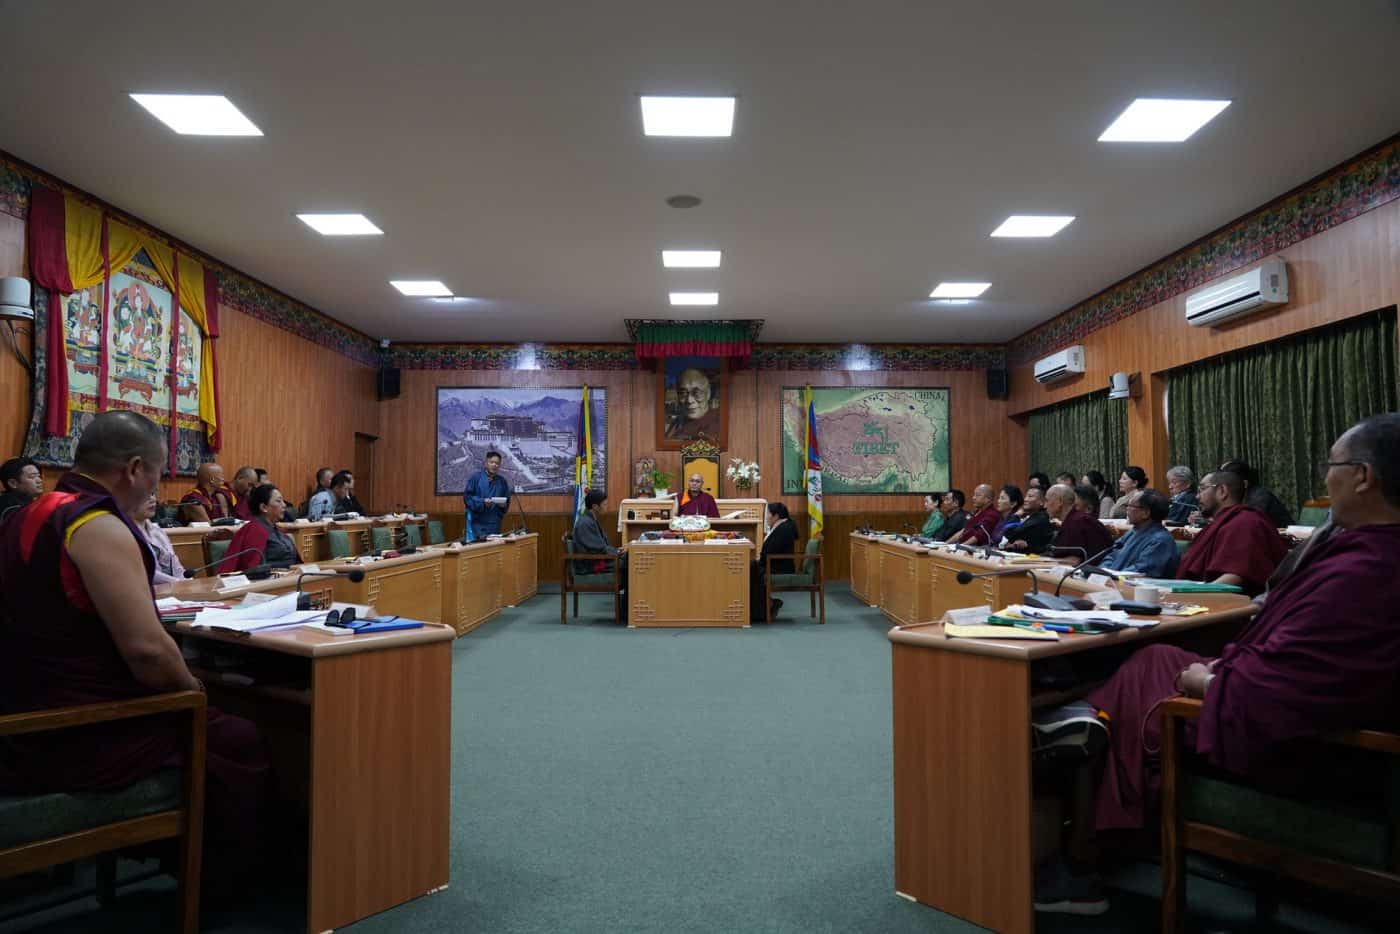 Unter Xi Jinping erreicht die Unterdrückung in Tibet einen Höhepunkt. Die Welt muss Chinas Narrativen etwas entgegensetzen – sagt Tibet-Aktivist Dorjee Tseten.